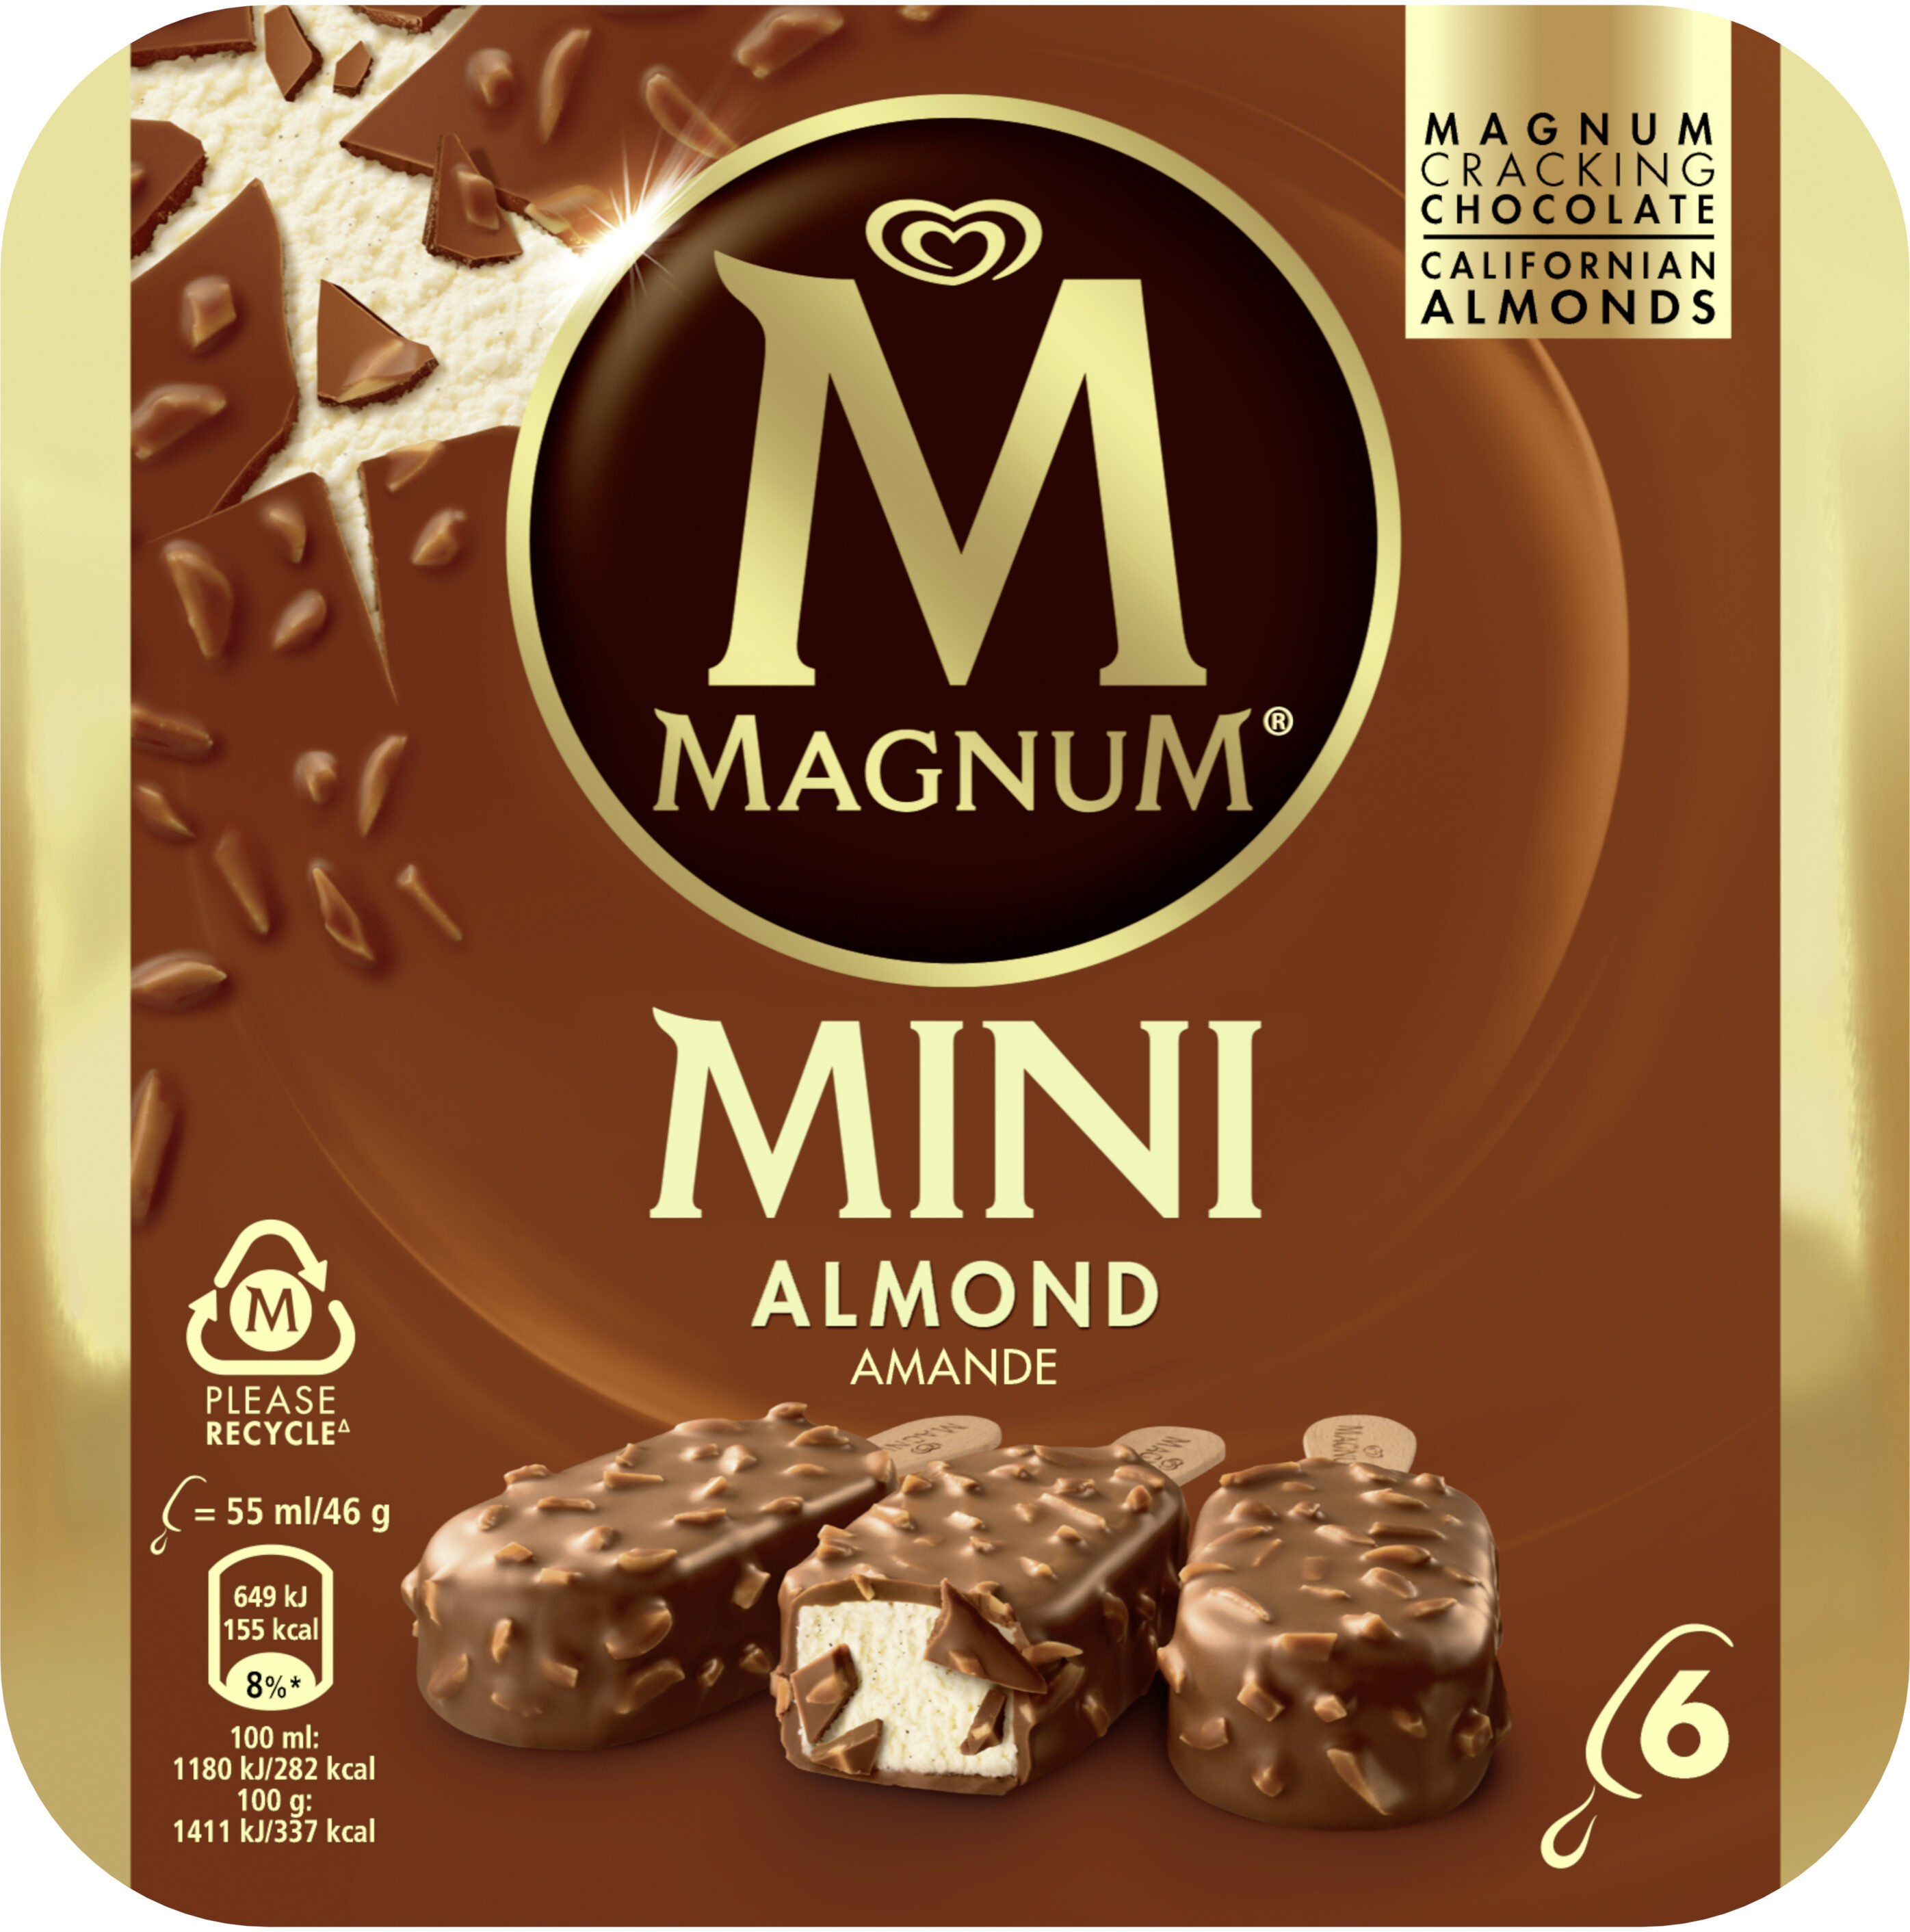 Mini almond - Producto